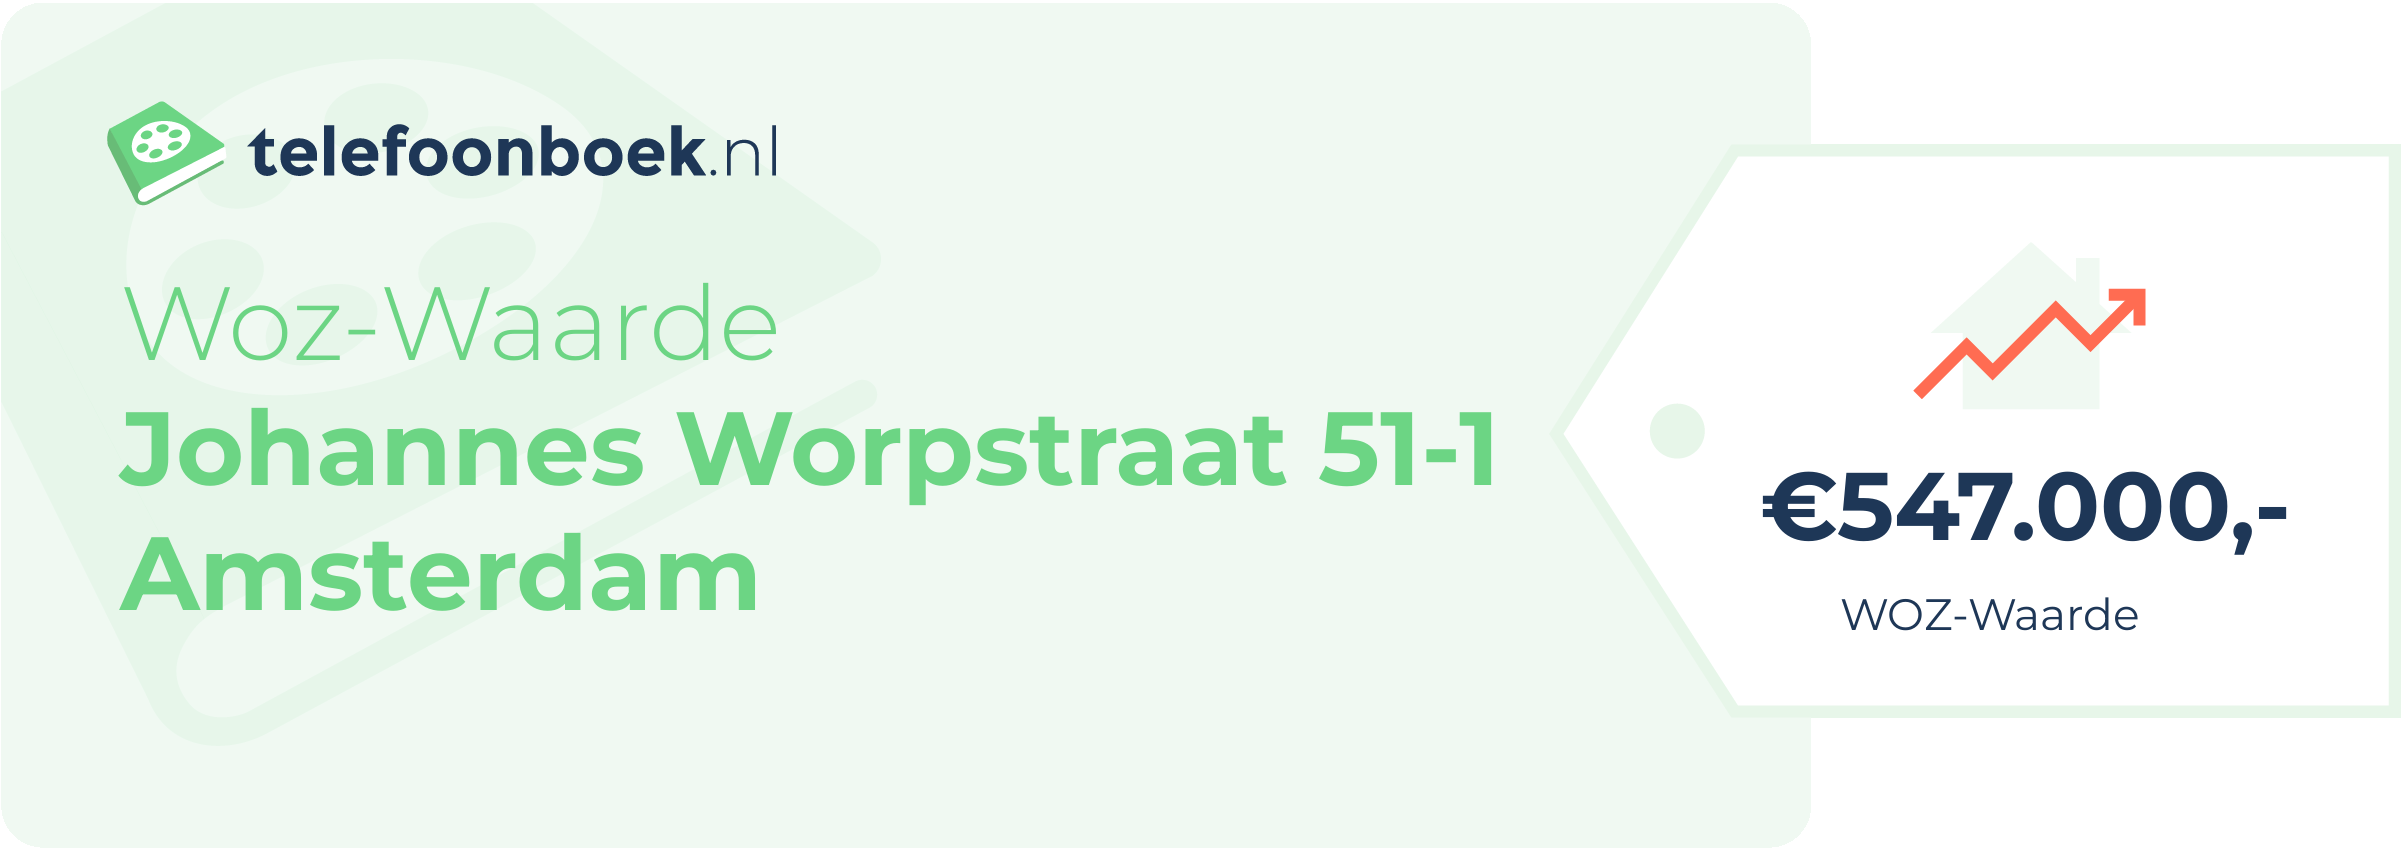 WOZ-waarde Johannes Worpstraat 51-1 Amsterdam